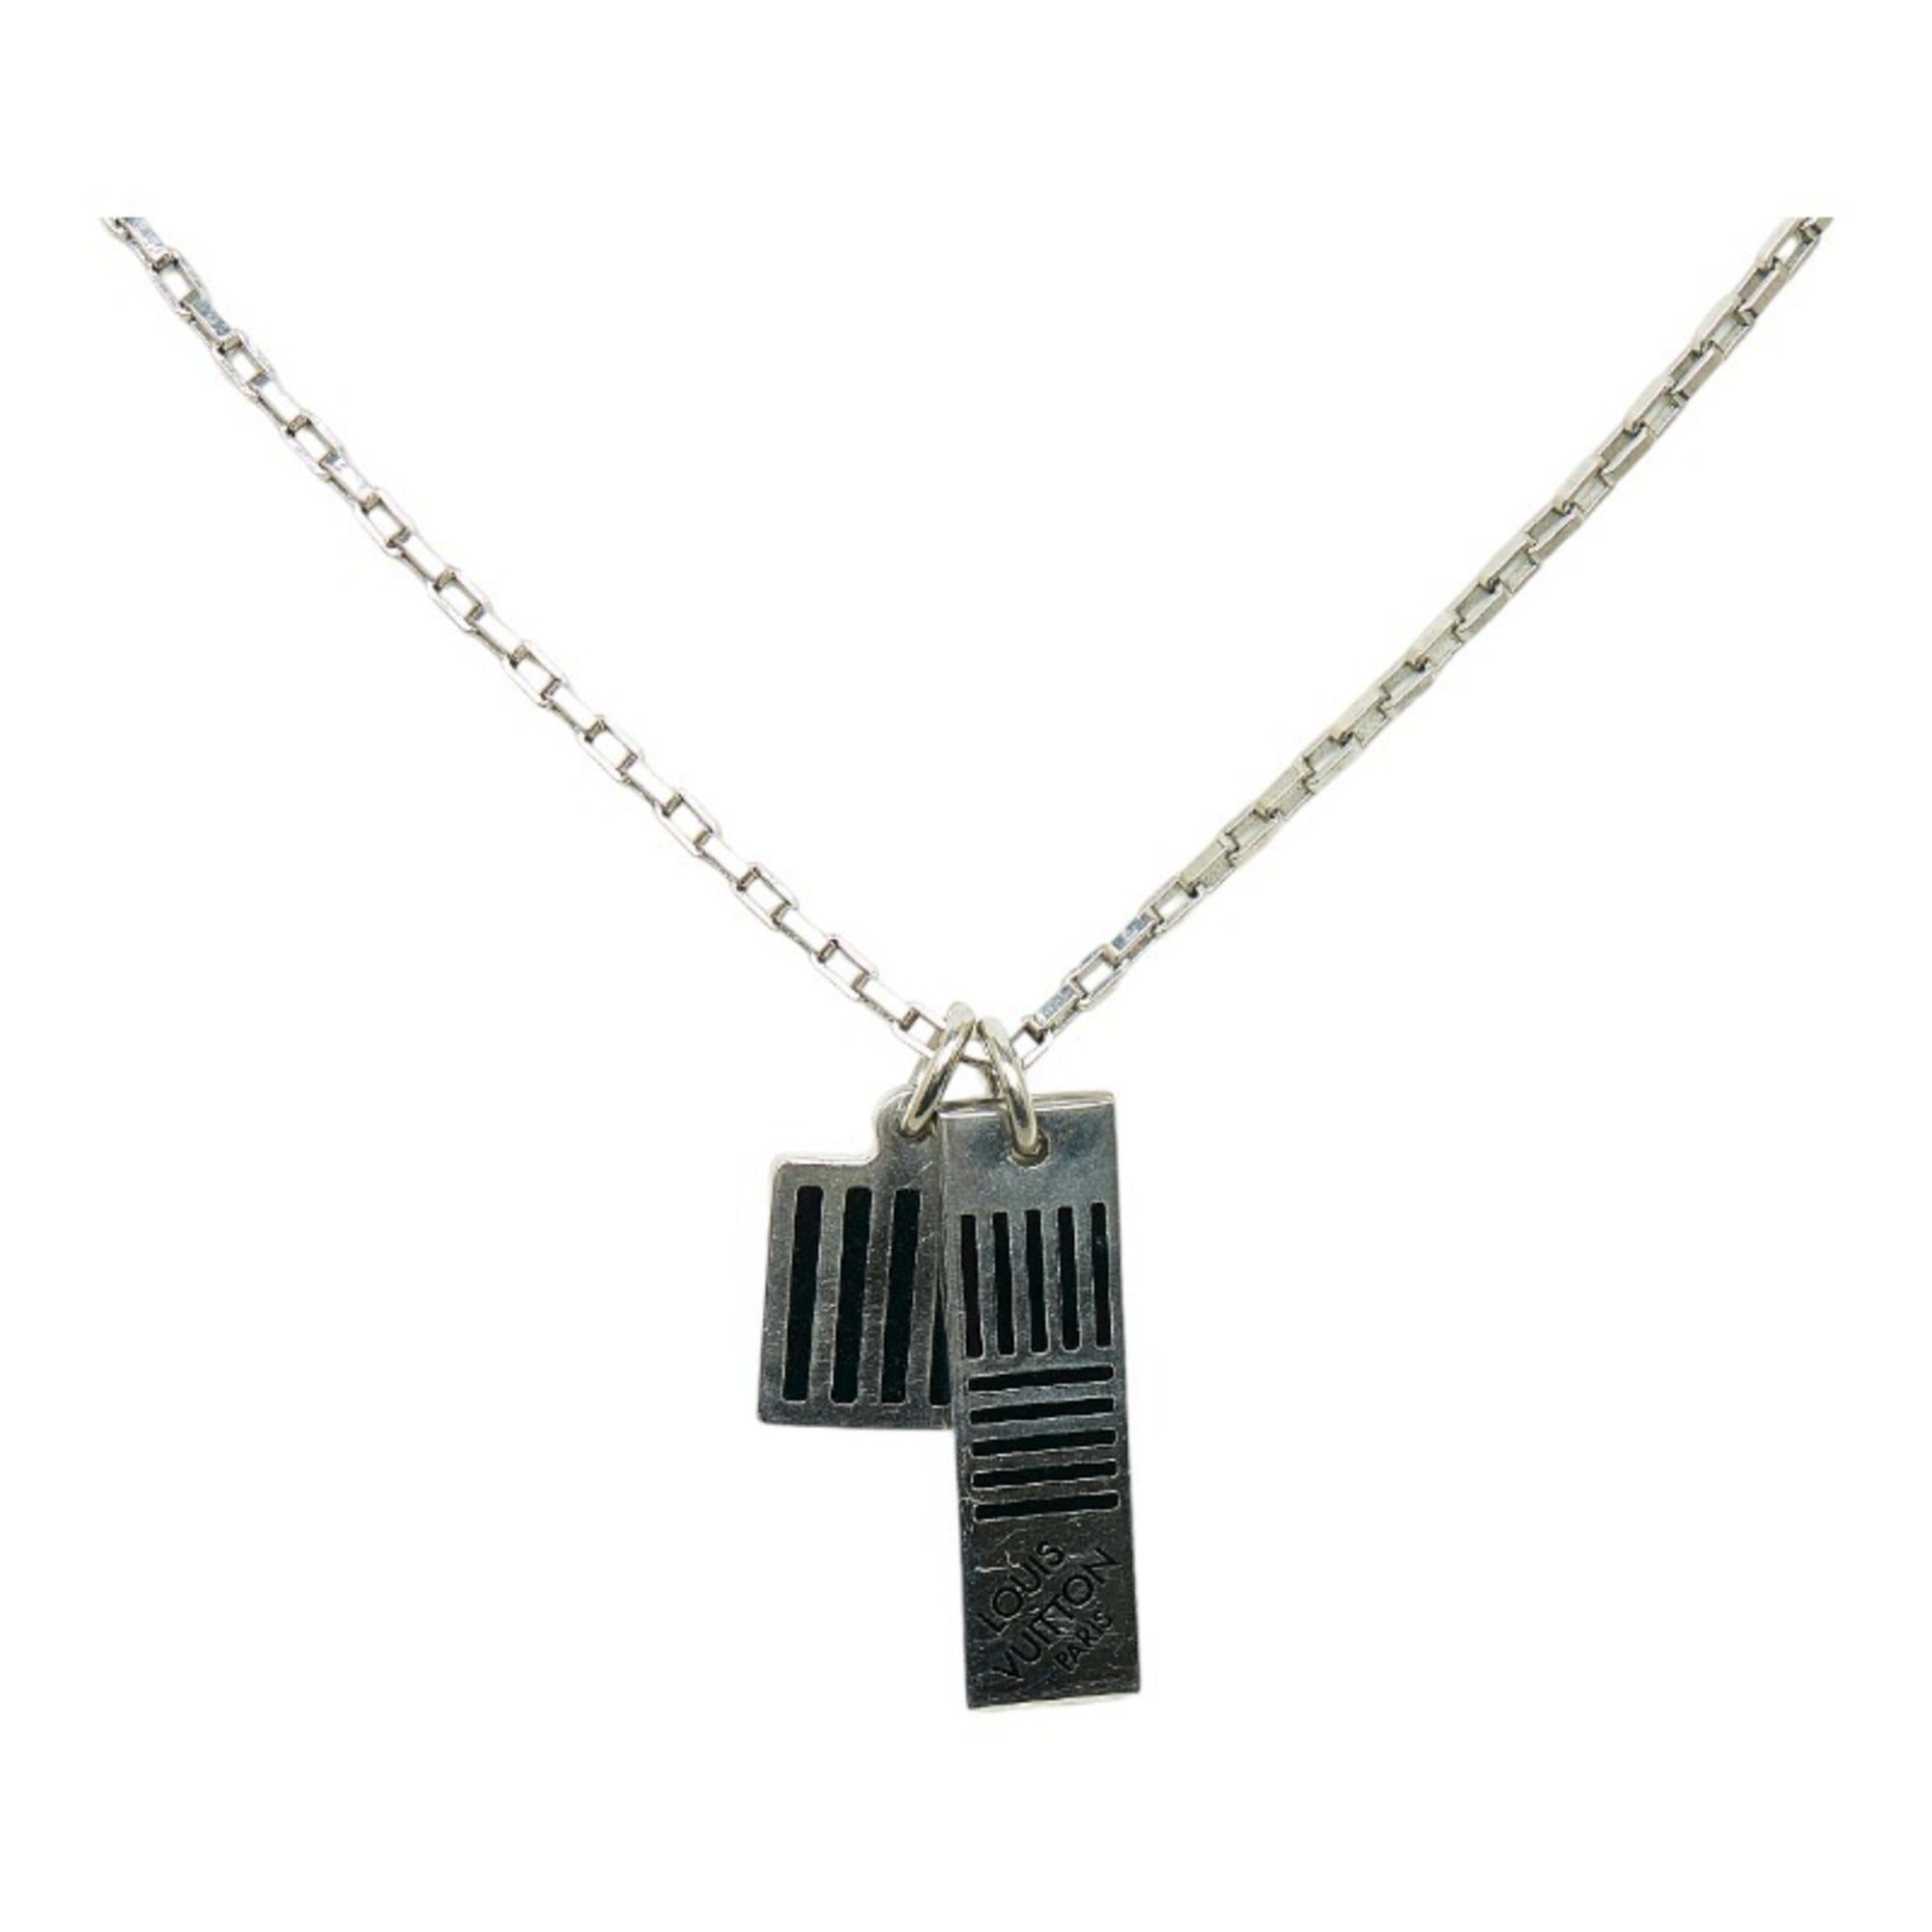 Shop Louis Vuitton Damier black necklace (M62490) by Milanoo